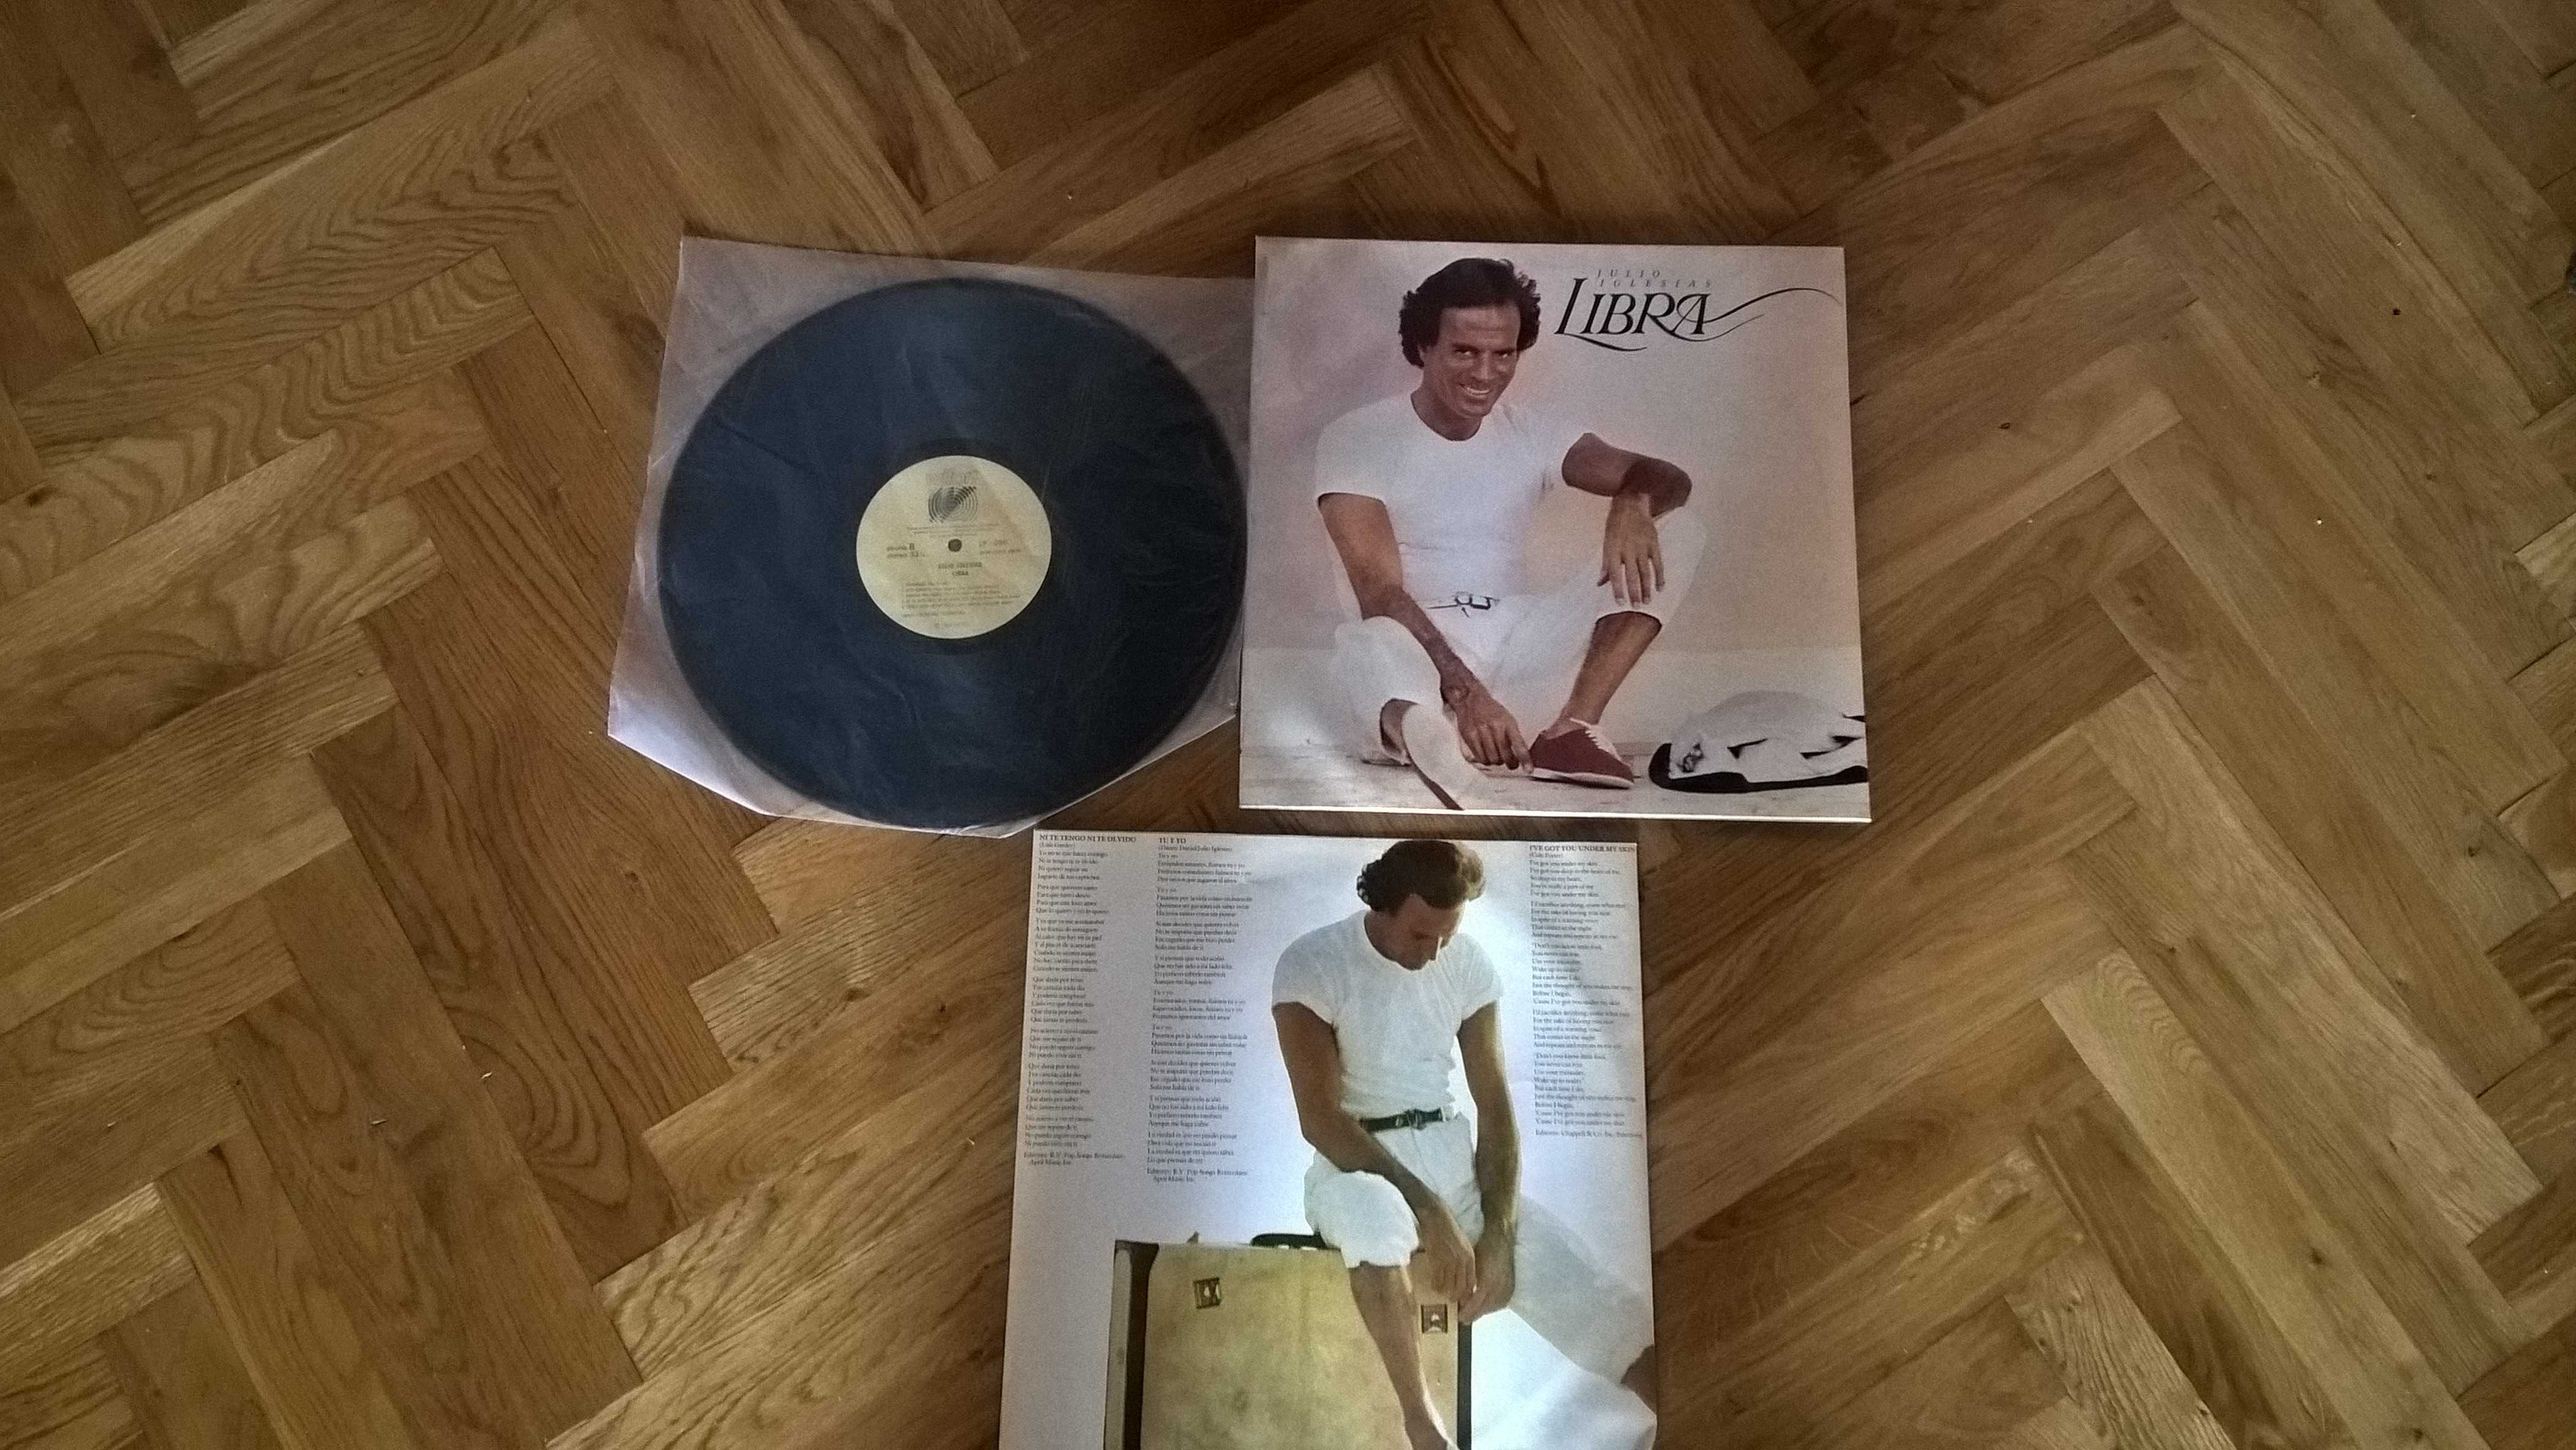 płyta winylowa  Julio Iglesias  Libra  1986r  Stan idealny